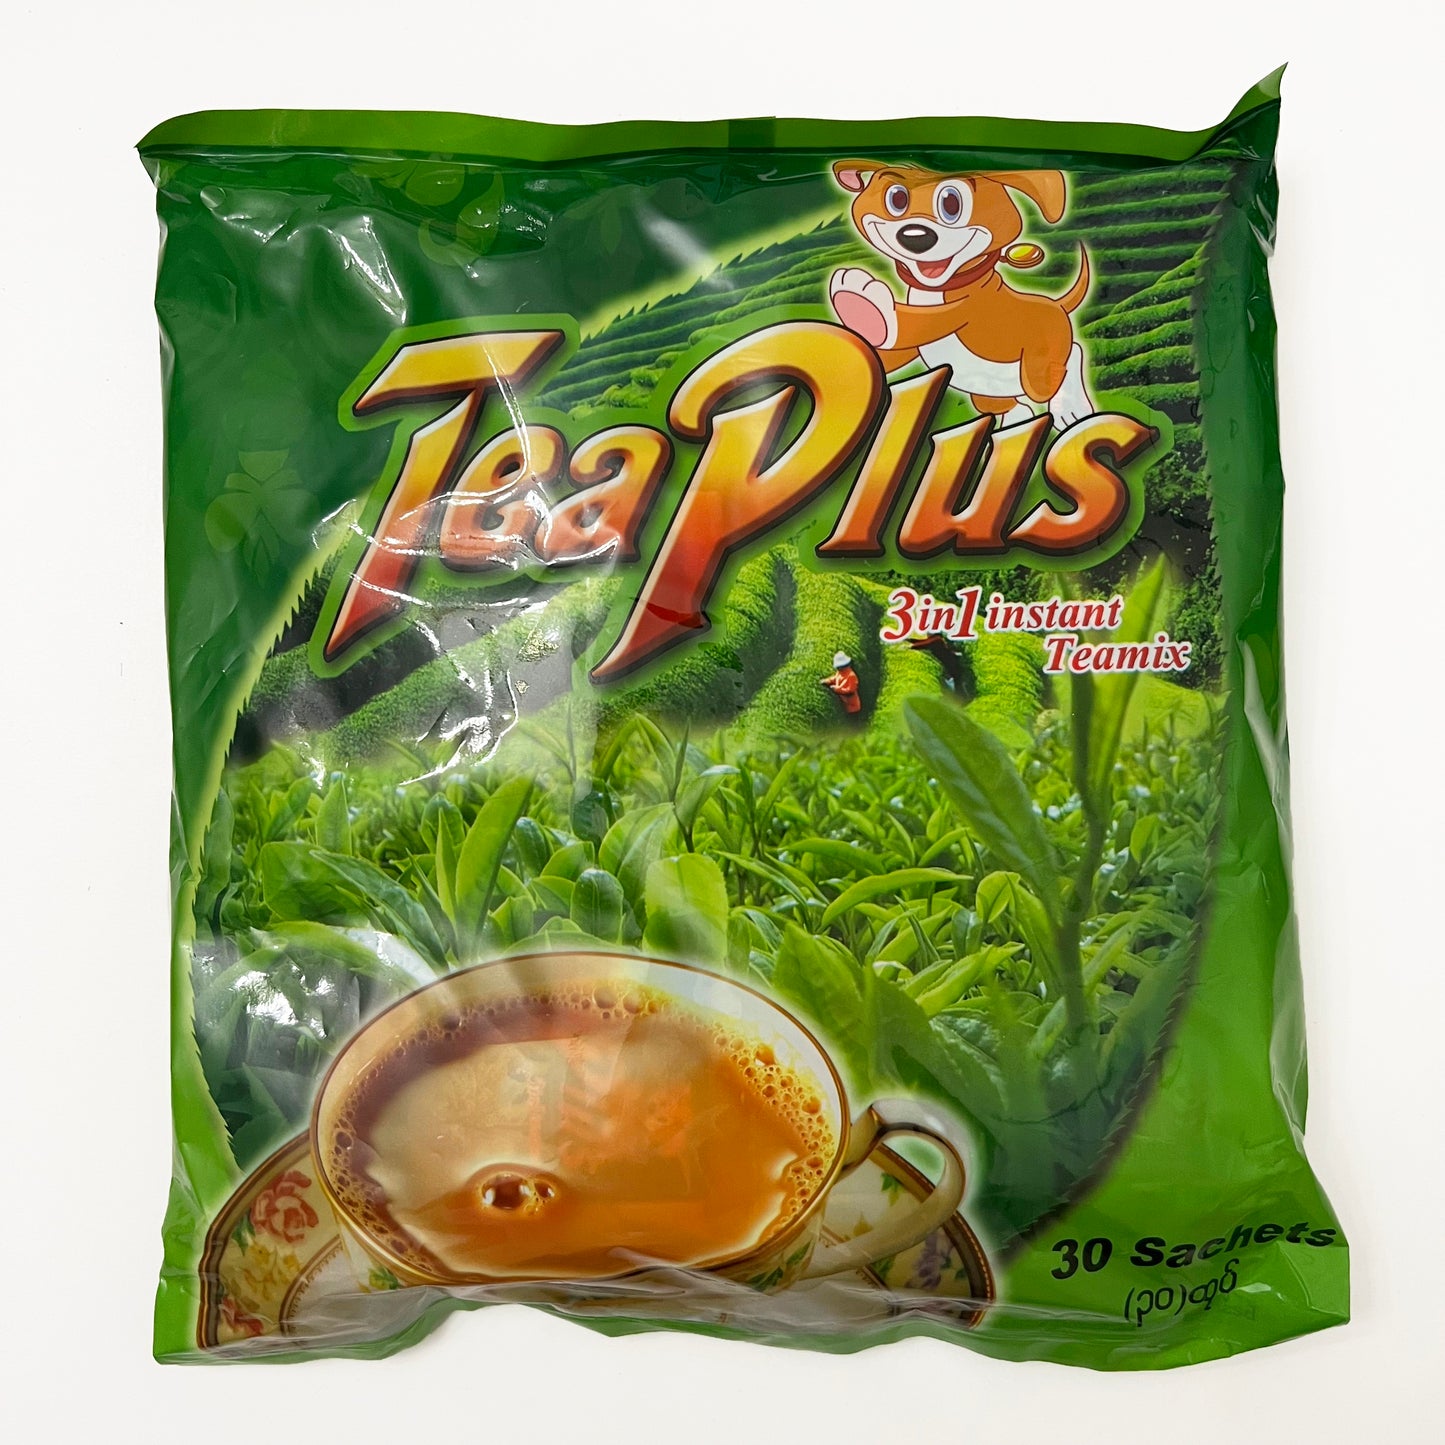 TeaPlus 3in1 Myanmar TeaMix by Mikko750g x 12 Bags